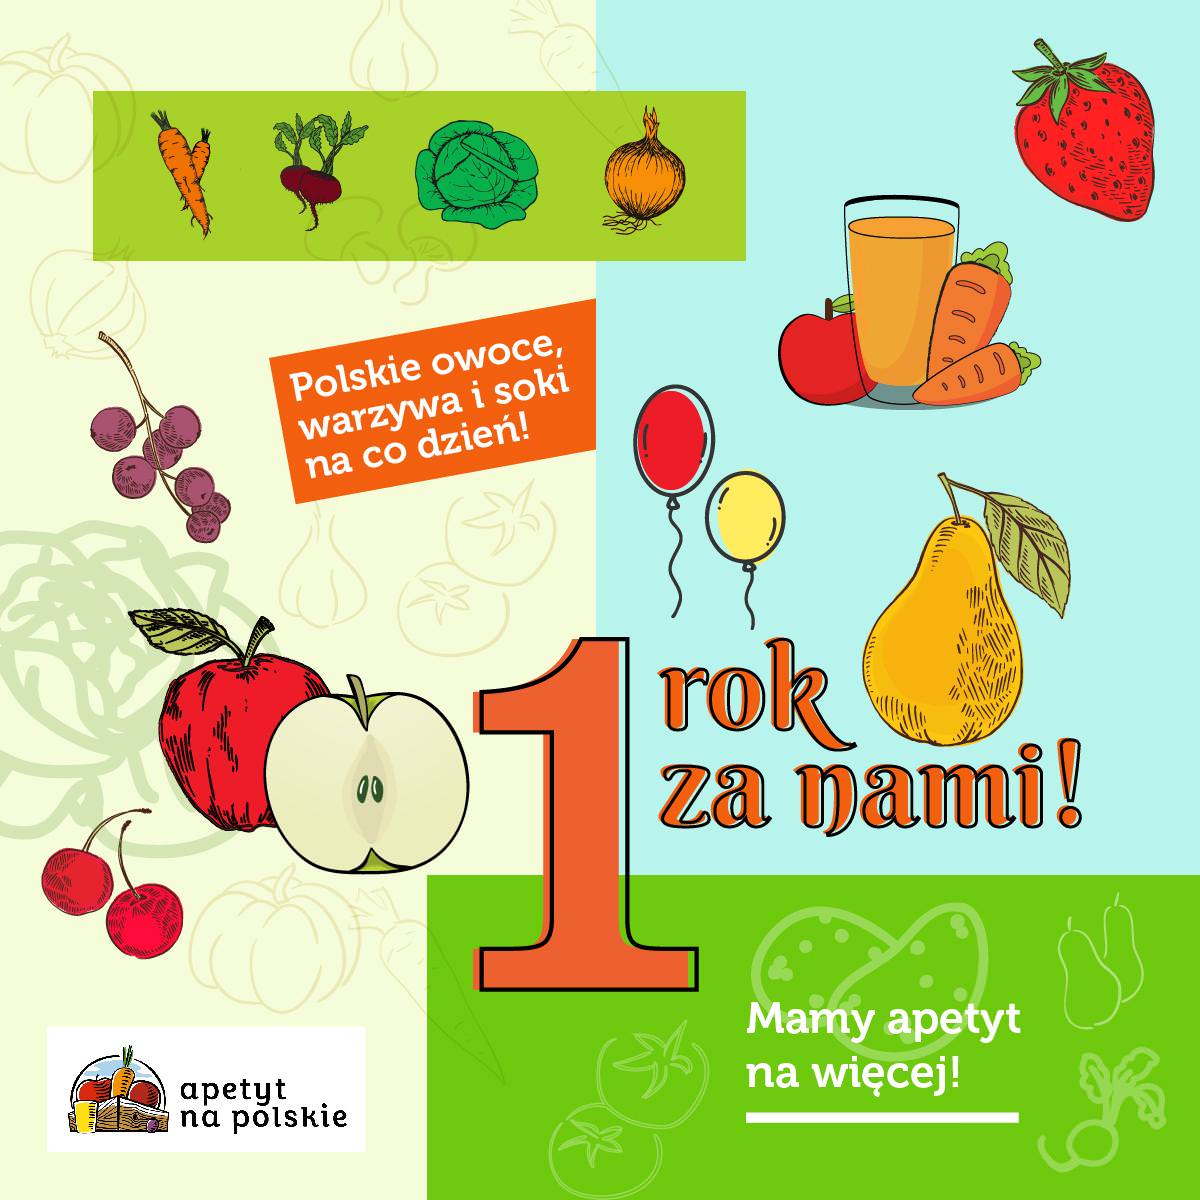 Apetyt na polskie owoce i warzywa